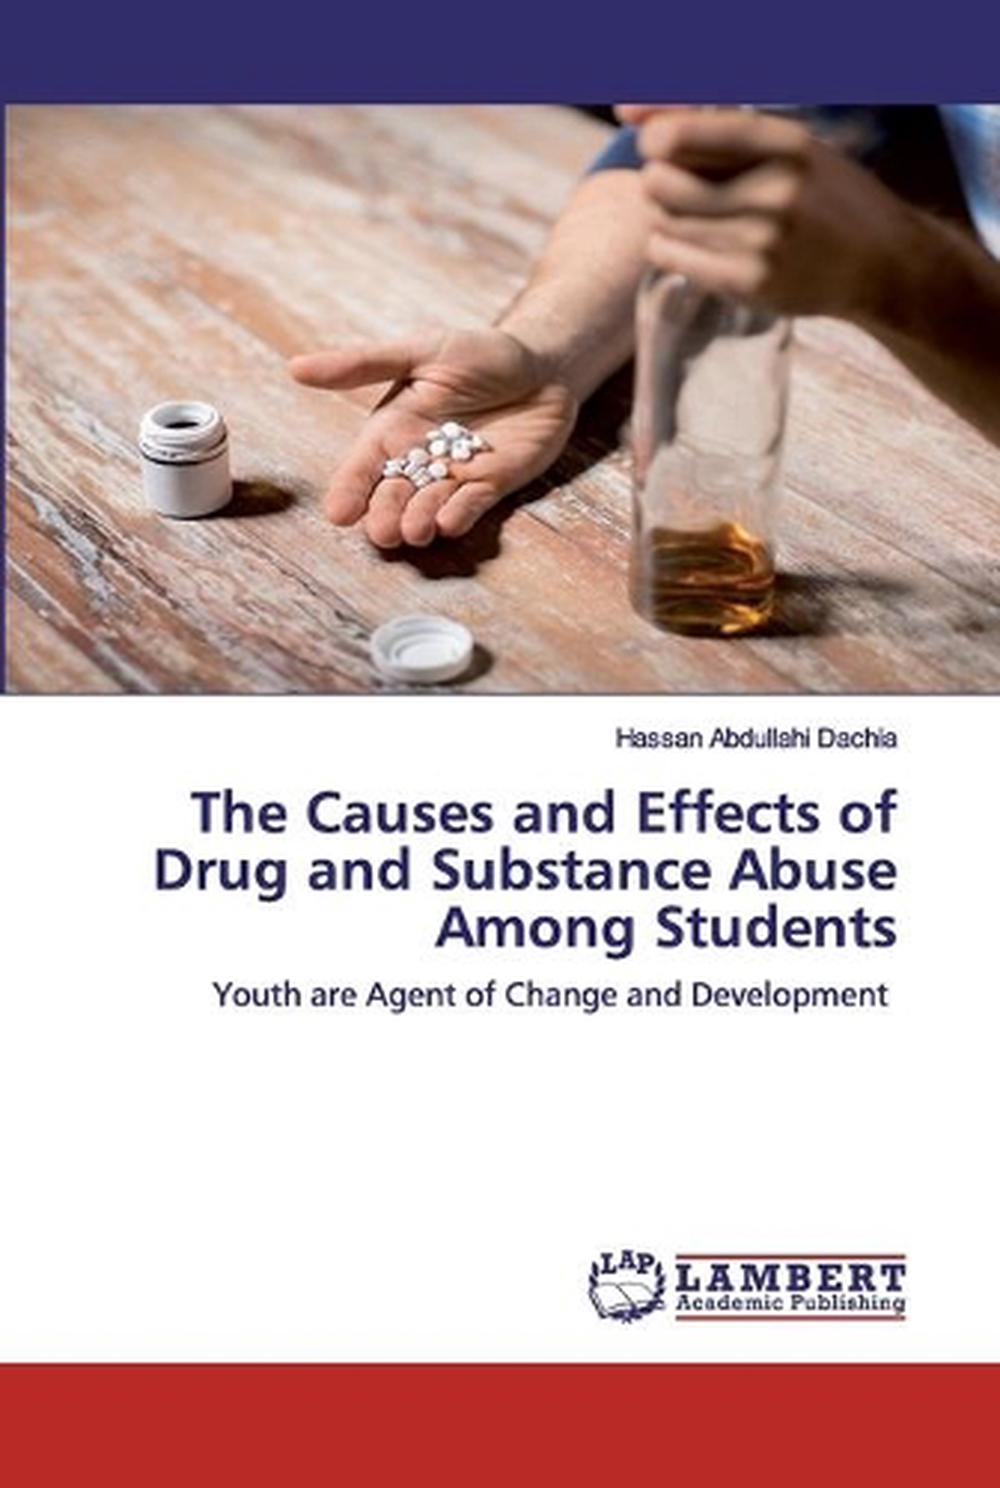 essay on menace of drugs among youth